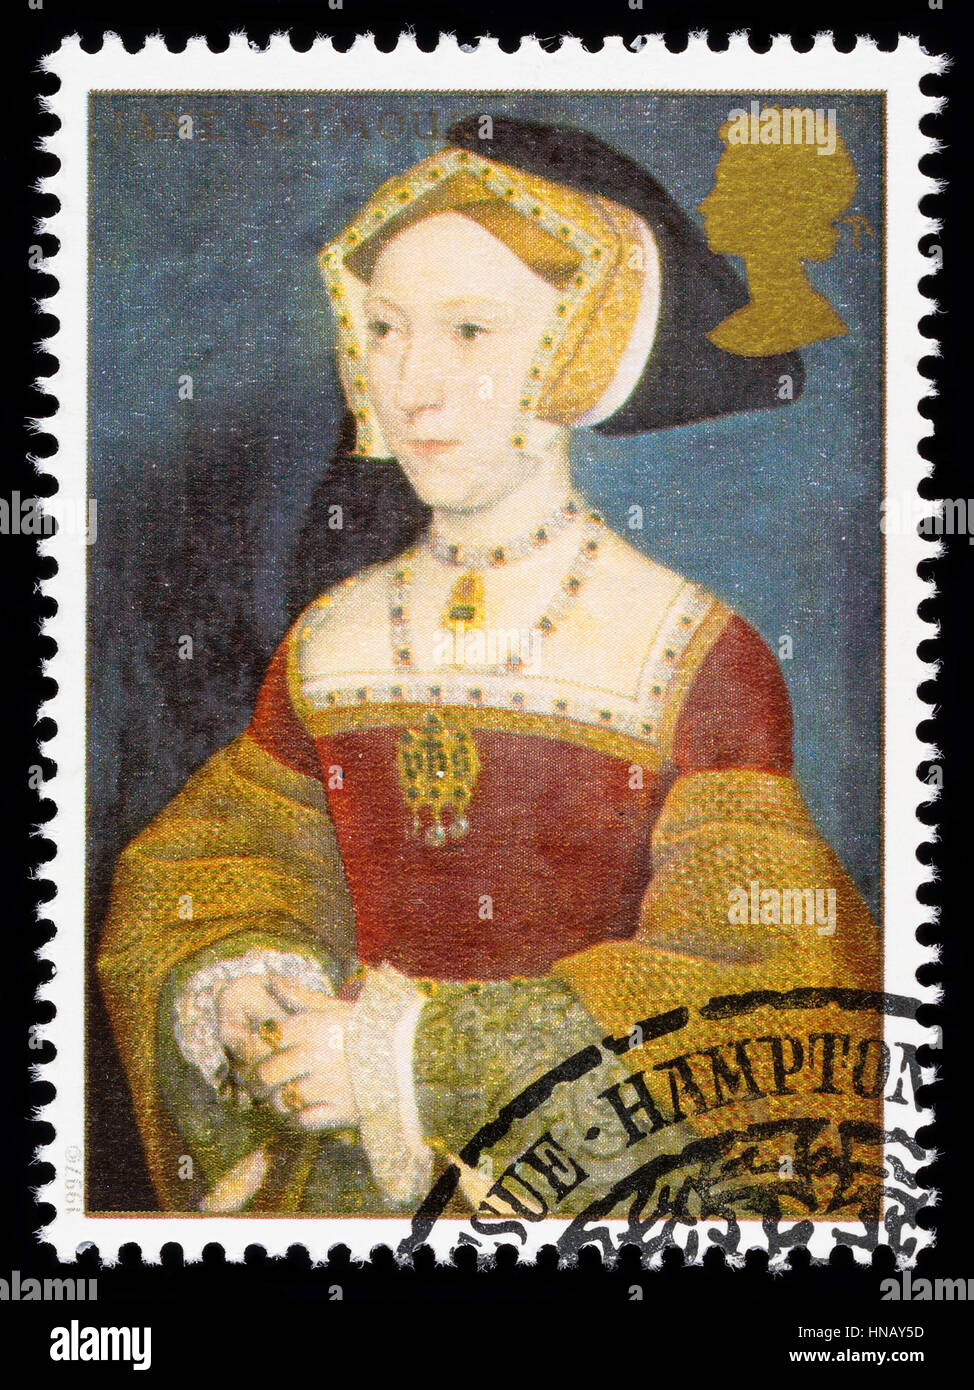 Regno Unito - circa 1997: usato francobollo stampato in Gran Bretagna per commemorare il Re Enrico VIII mostra Jane Seymour una delle sue numerose mogli Foto Stock